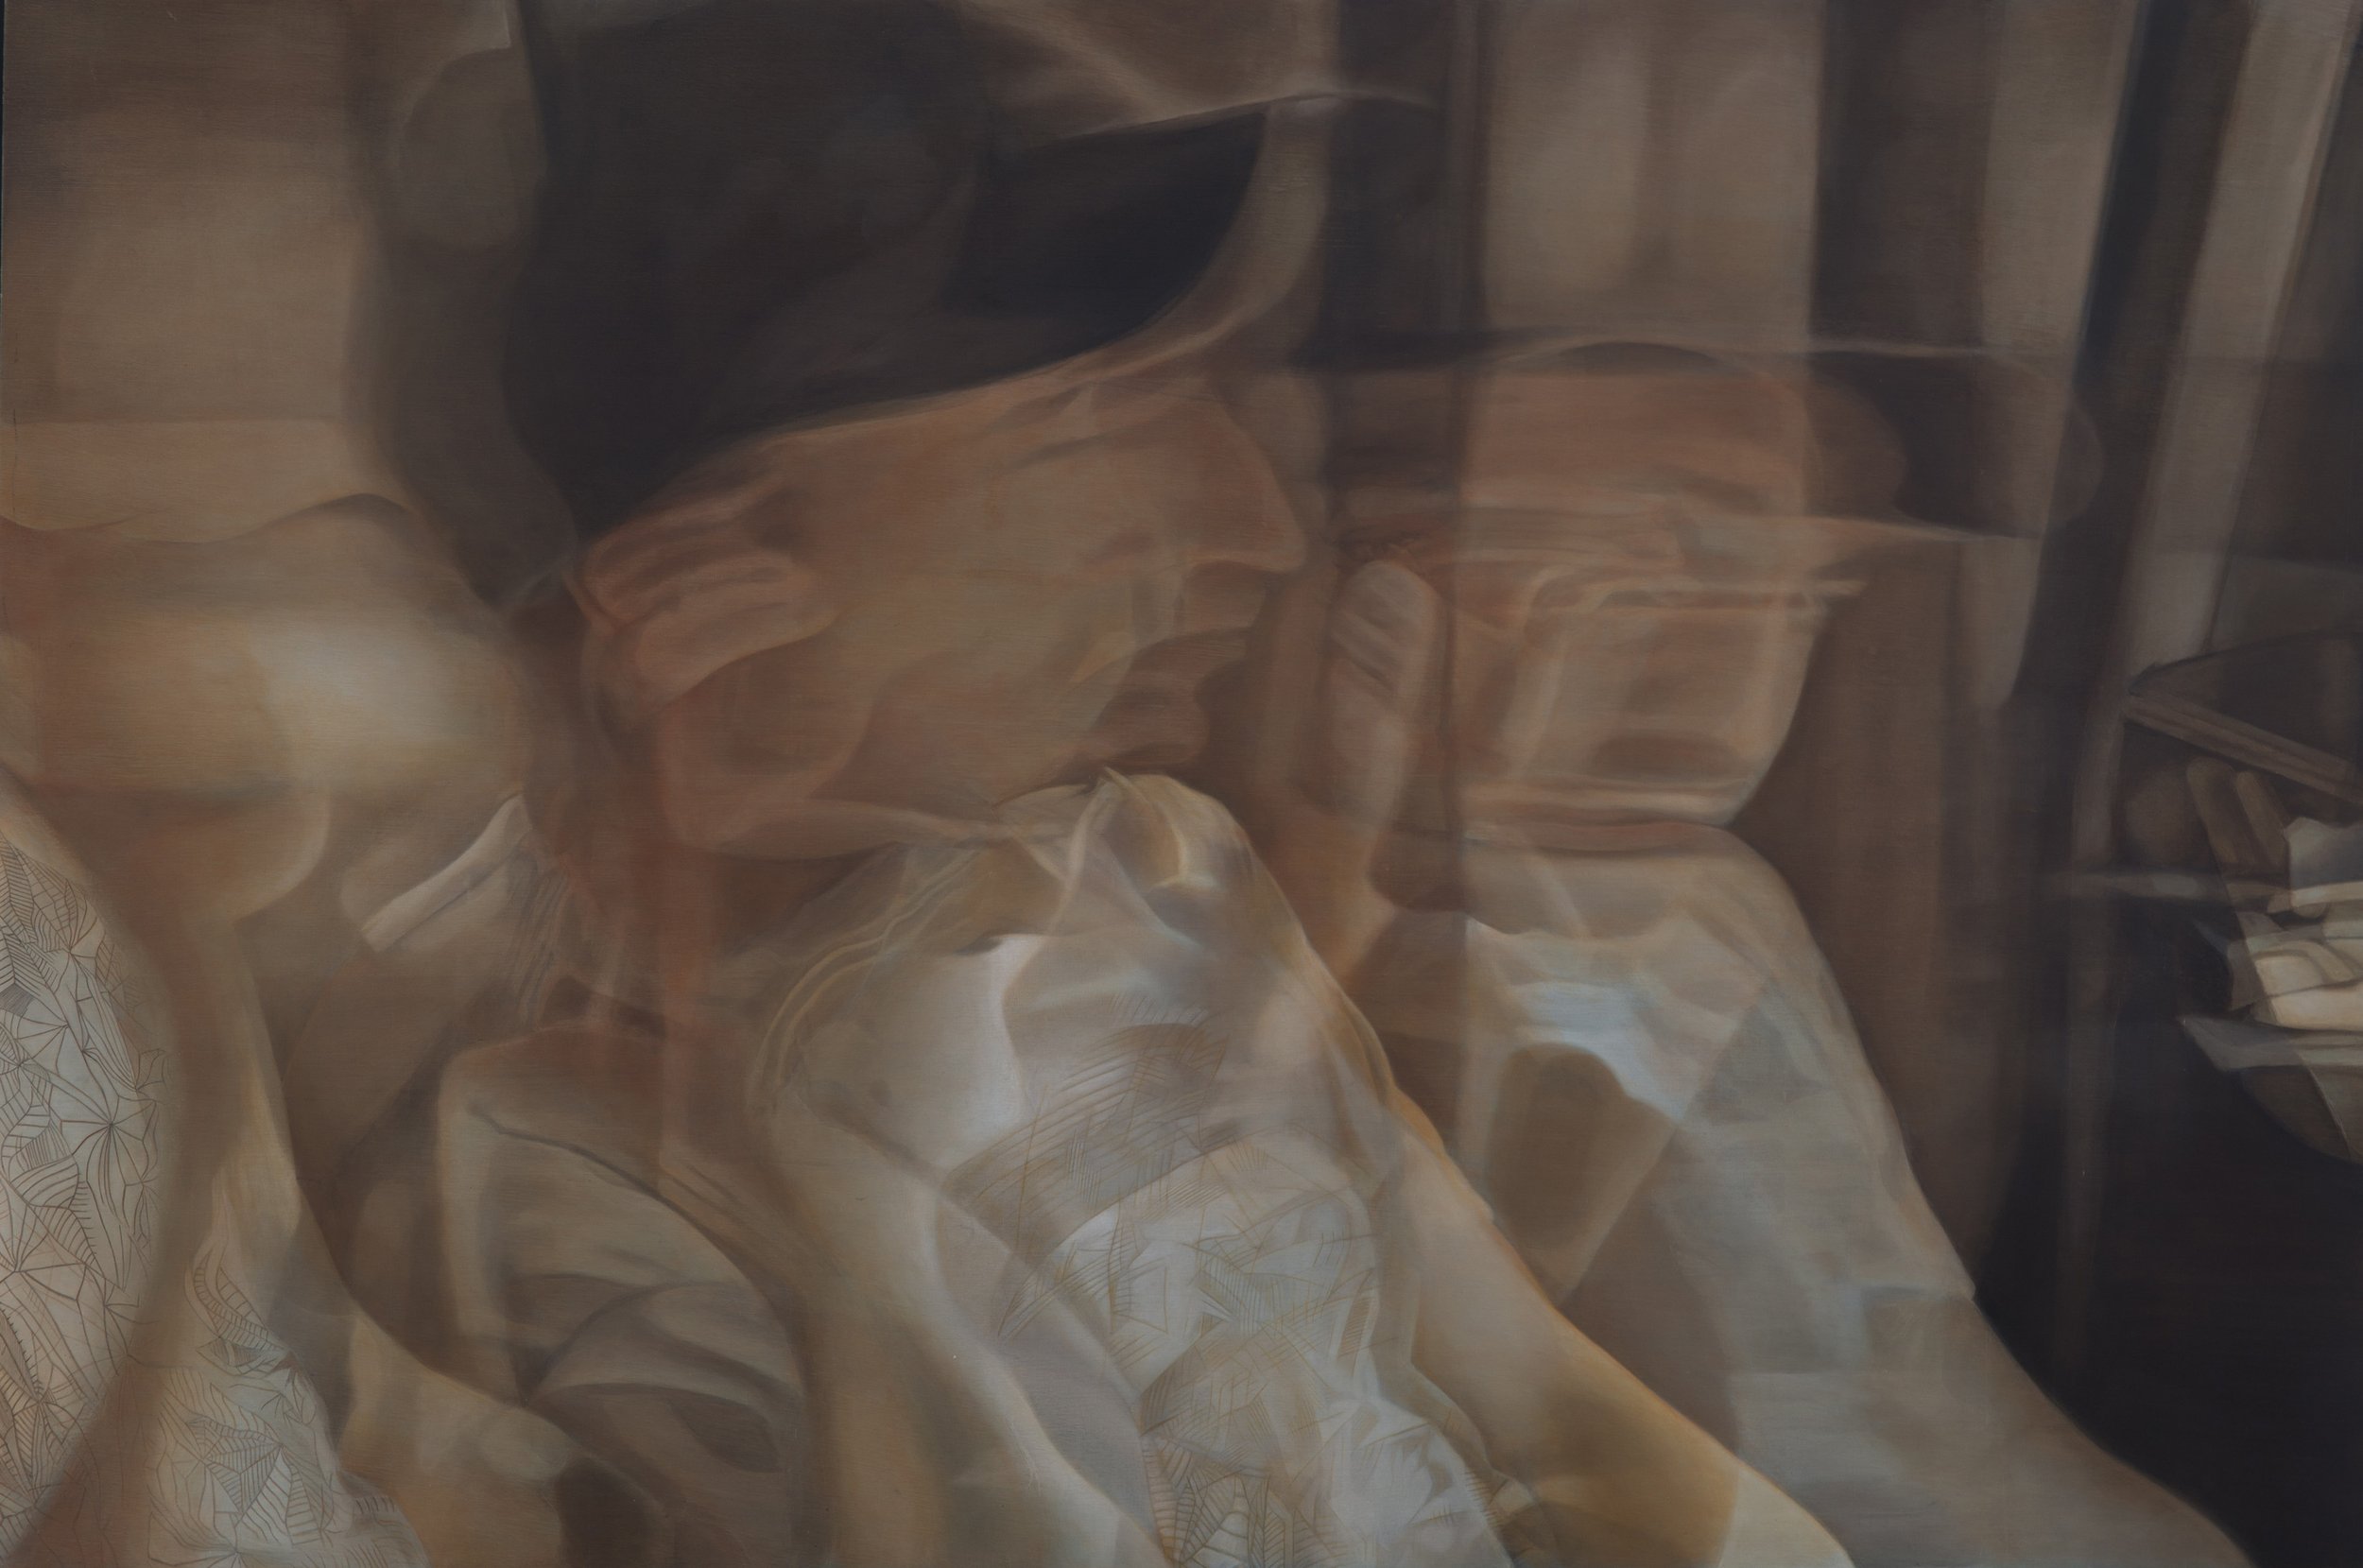   Précision fantomatique ,  Johannie Séguin , acrylique sur bois, 48 x 72 pouces, 2014   Crédit photo : Christian Leduc 